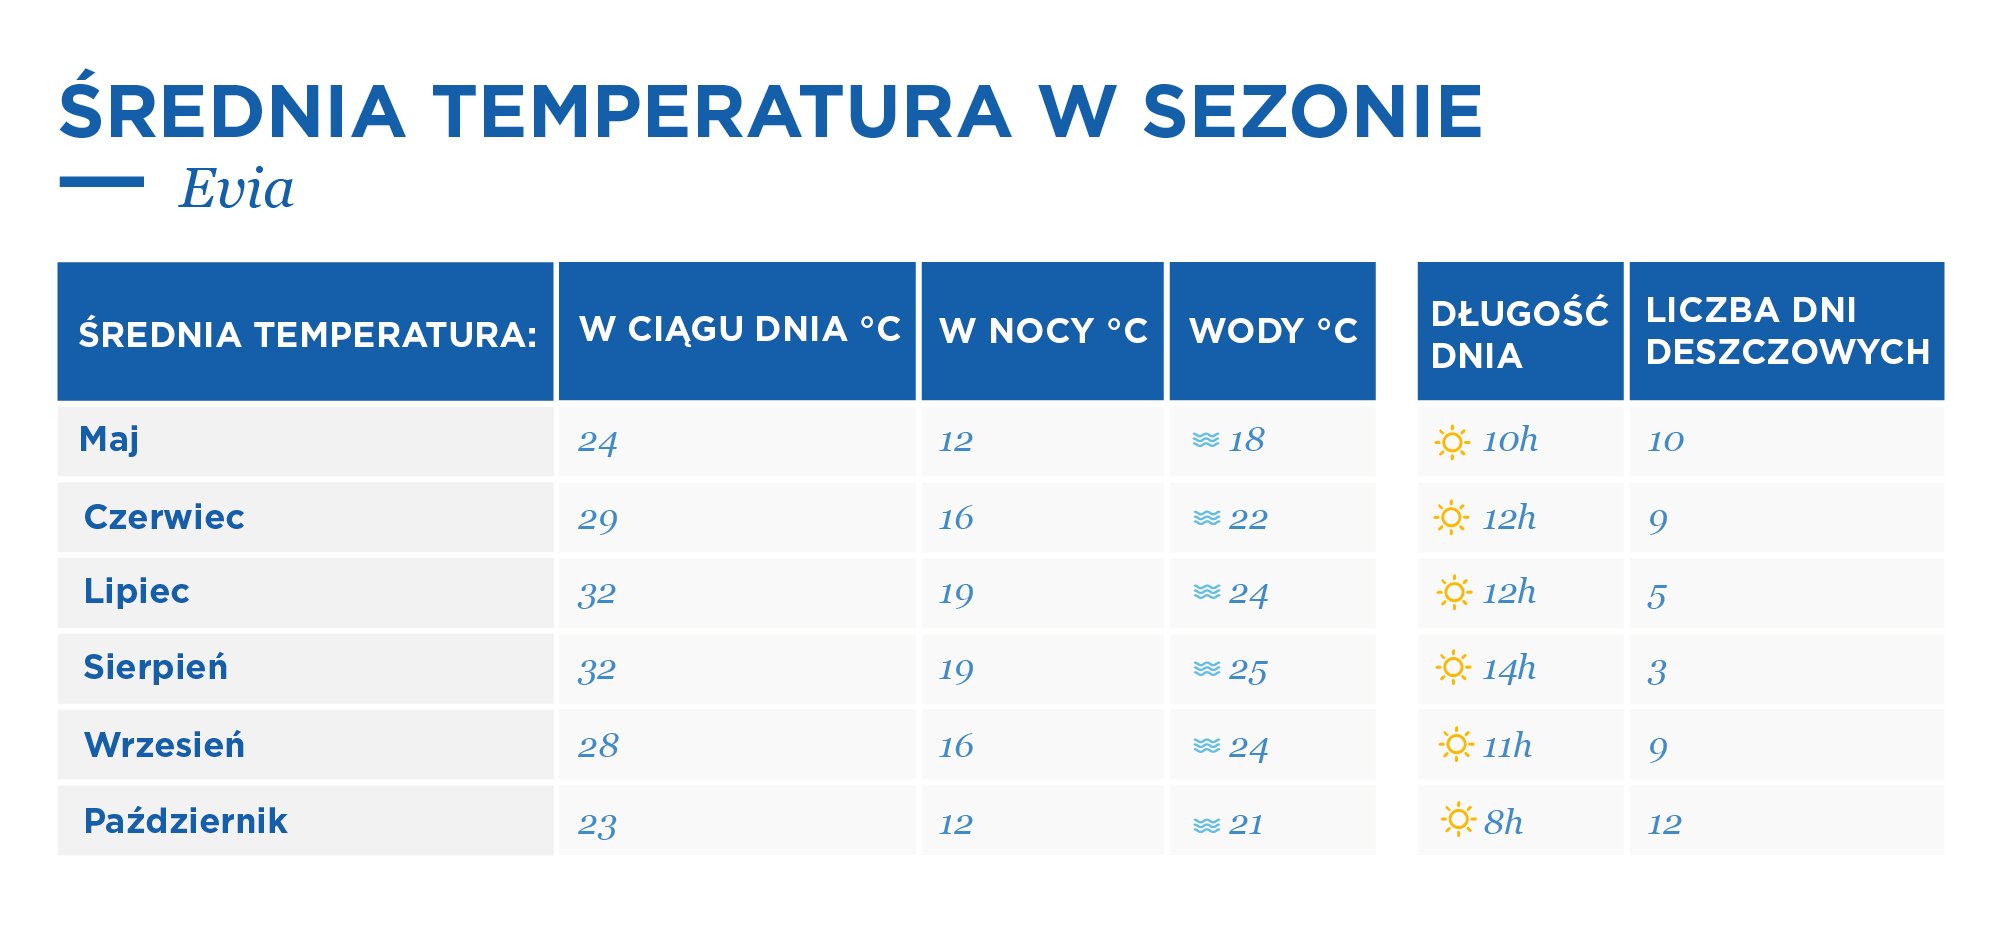 temperatury na wyspie Evia, przedstawienie w formie tabeli z podziałem na miesiące